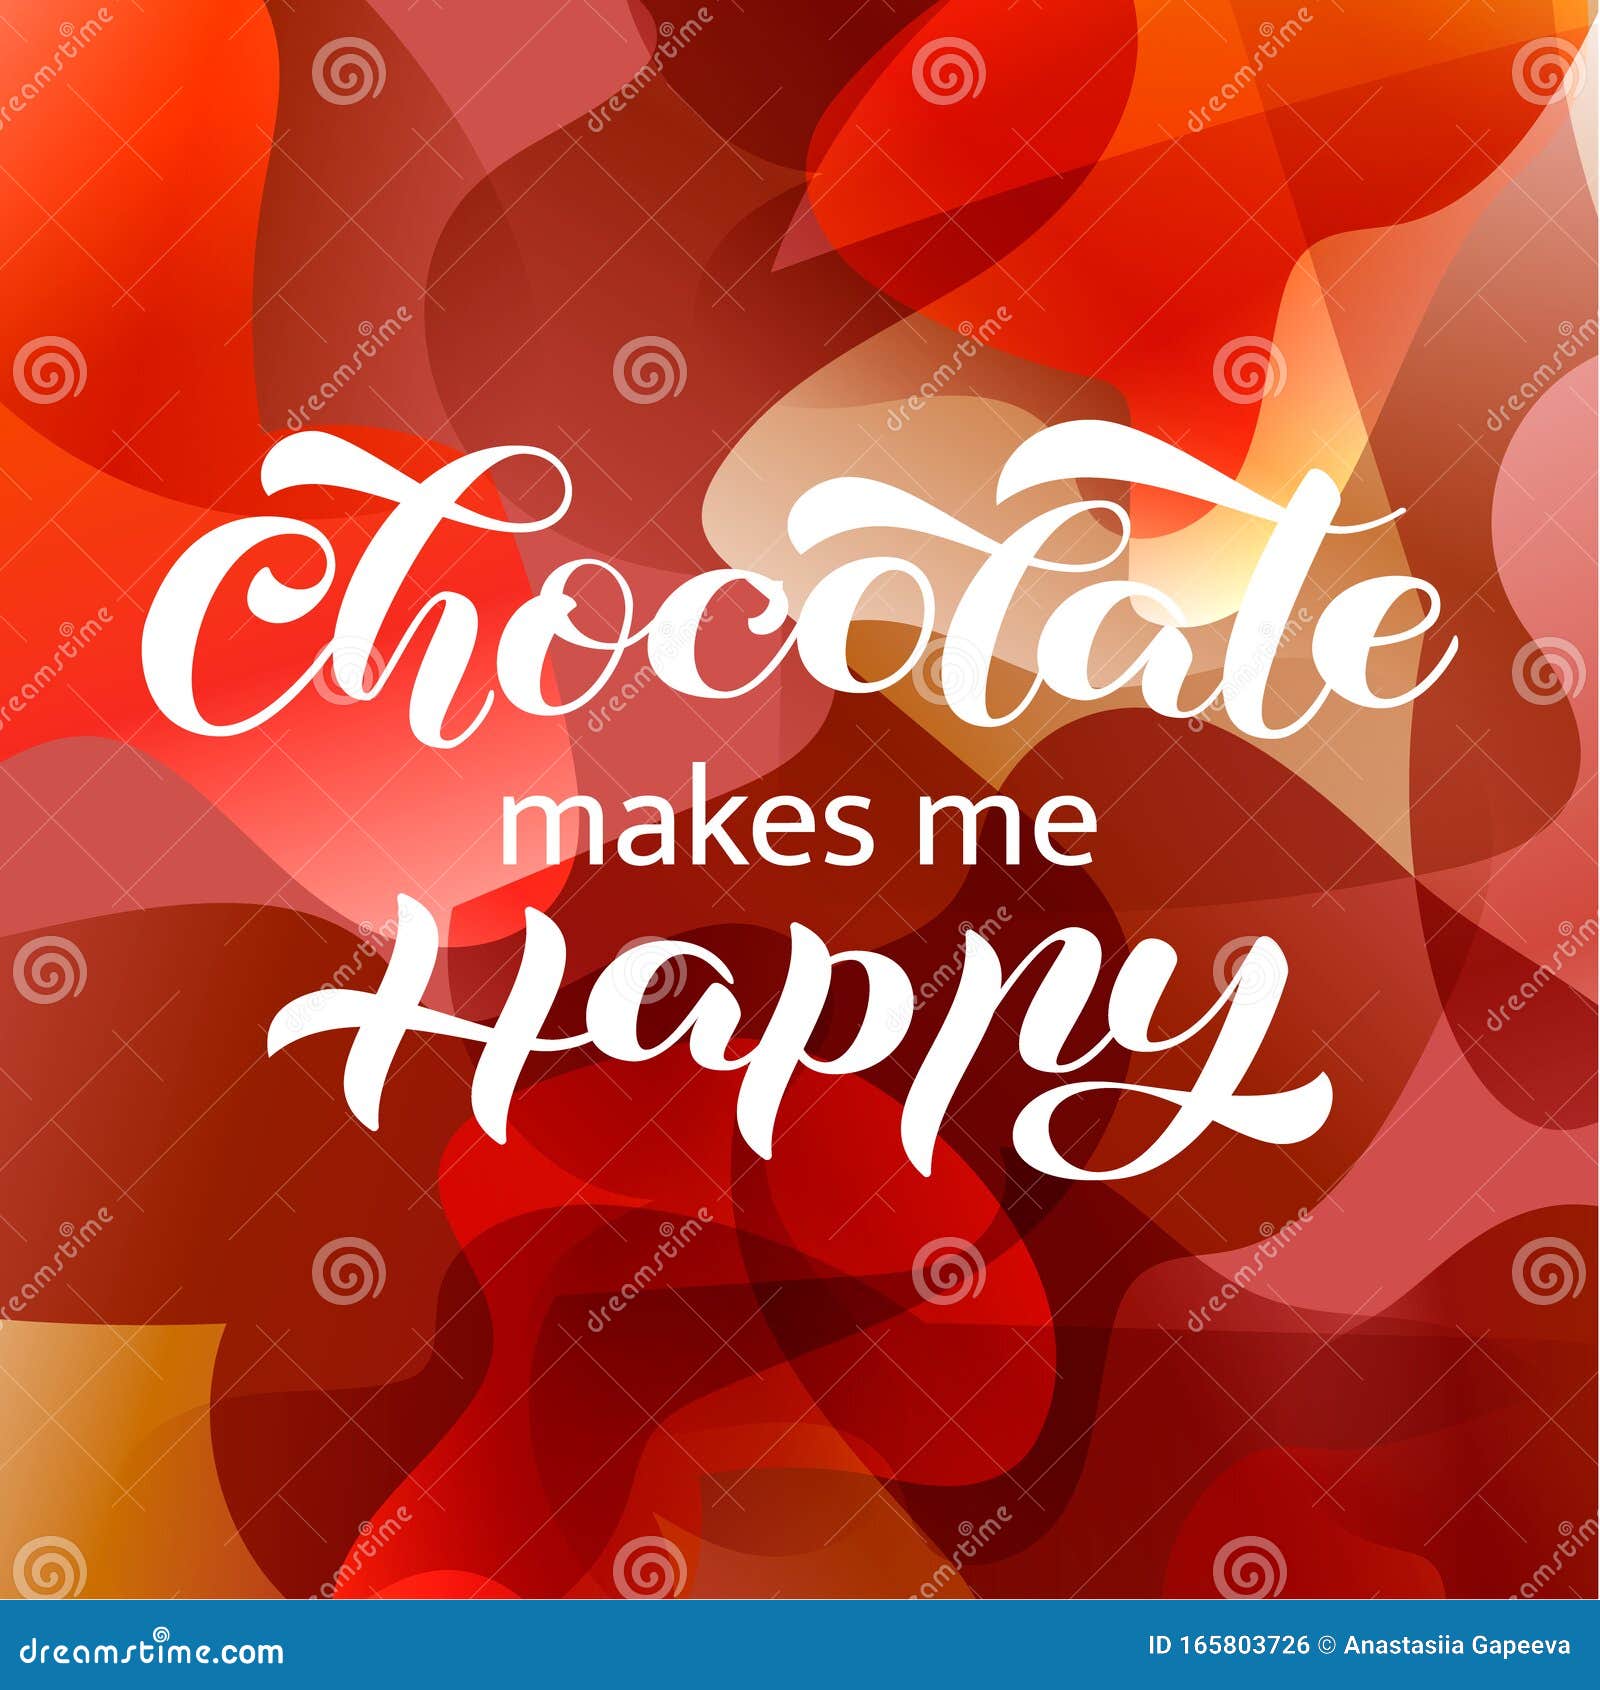 chocolate makes me happy essay